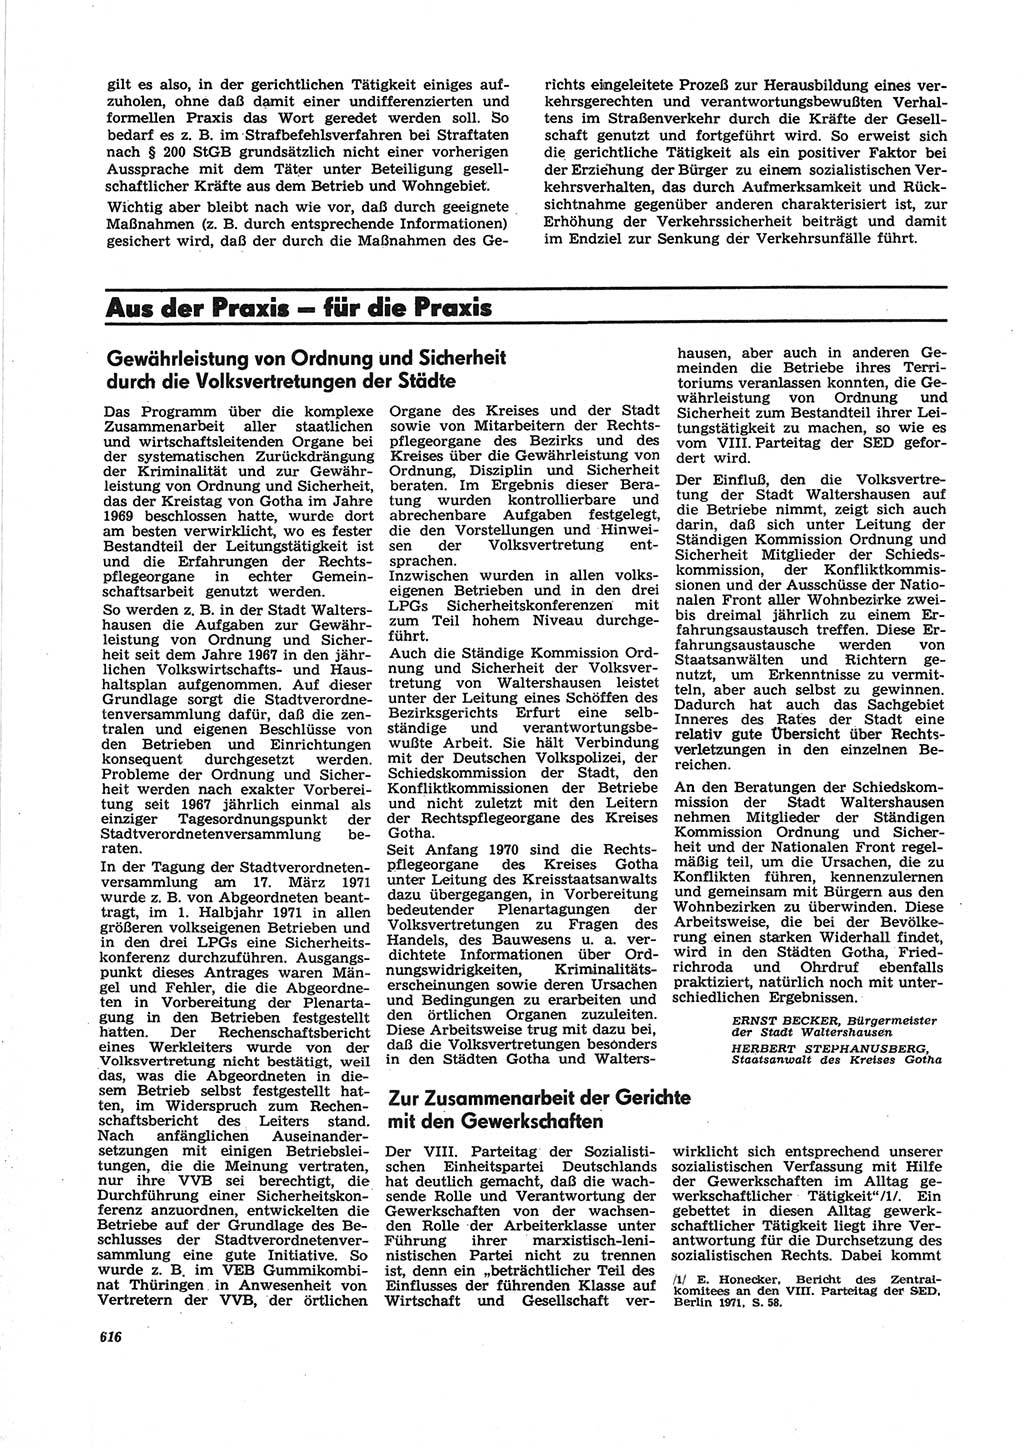 Neue Justiz (NJ), Zeitschrift für Recht und Rechtswissenschaft [Deutsche Demokratische Republik (DDR)], 25. Jahrgang 1971, Seite 616 (NJ DDR 1971, S. 616)